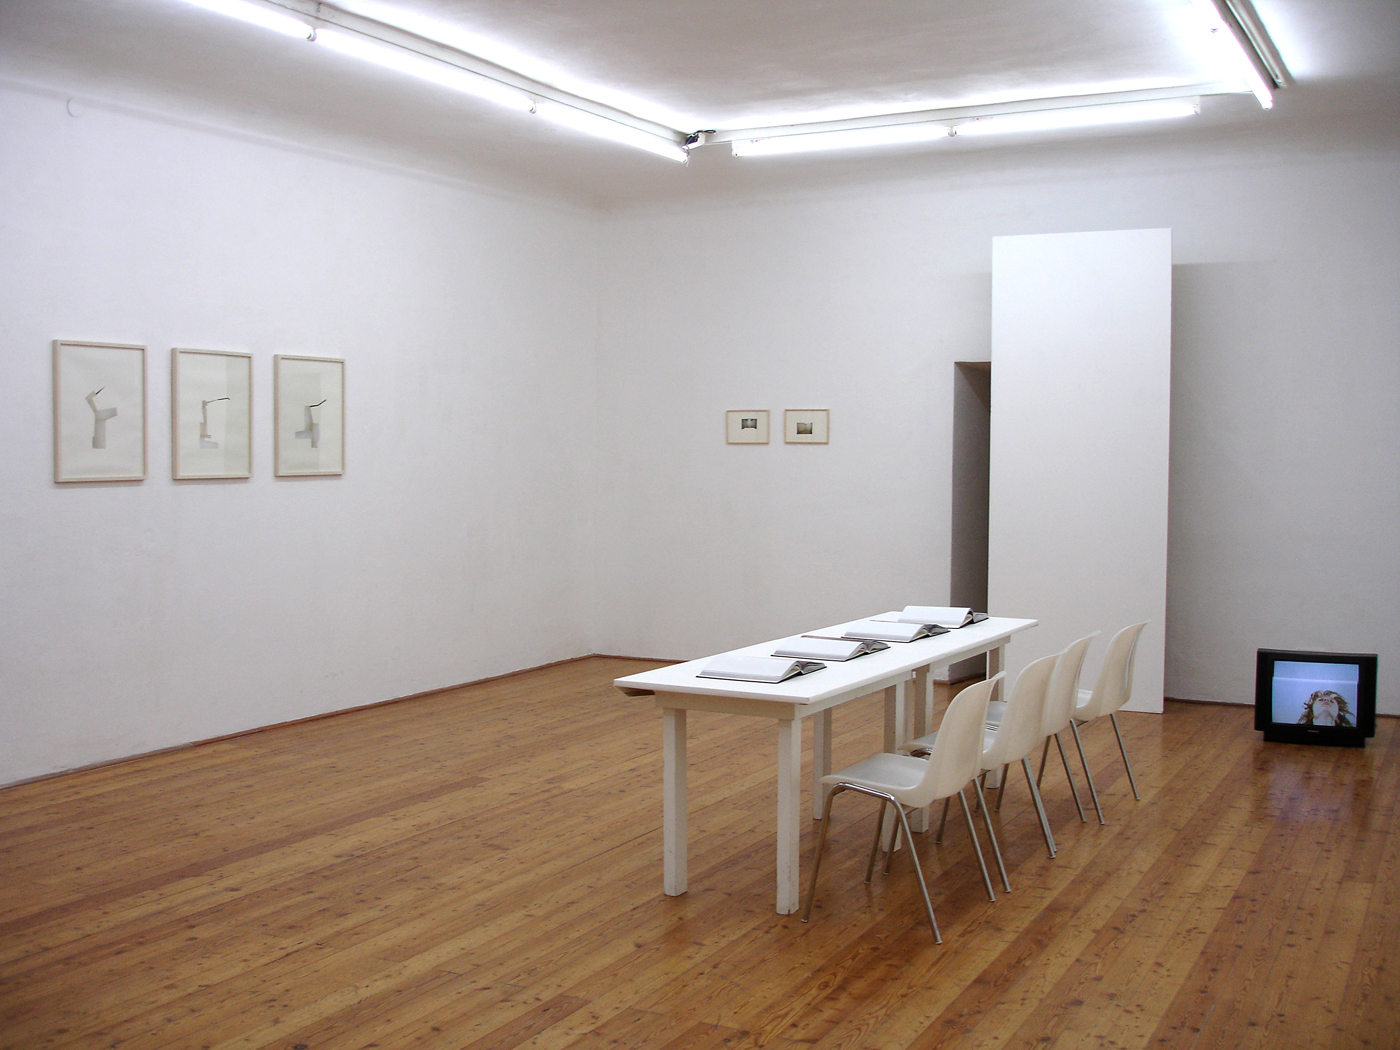 Galerie 5020, Salzburg, 2006